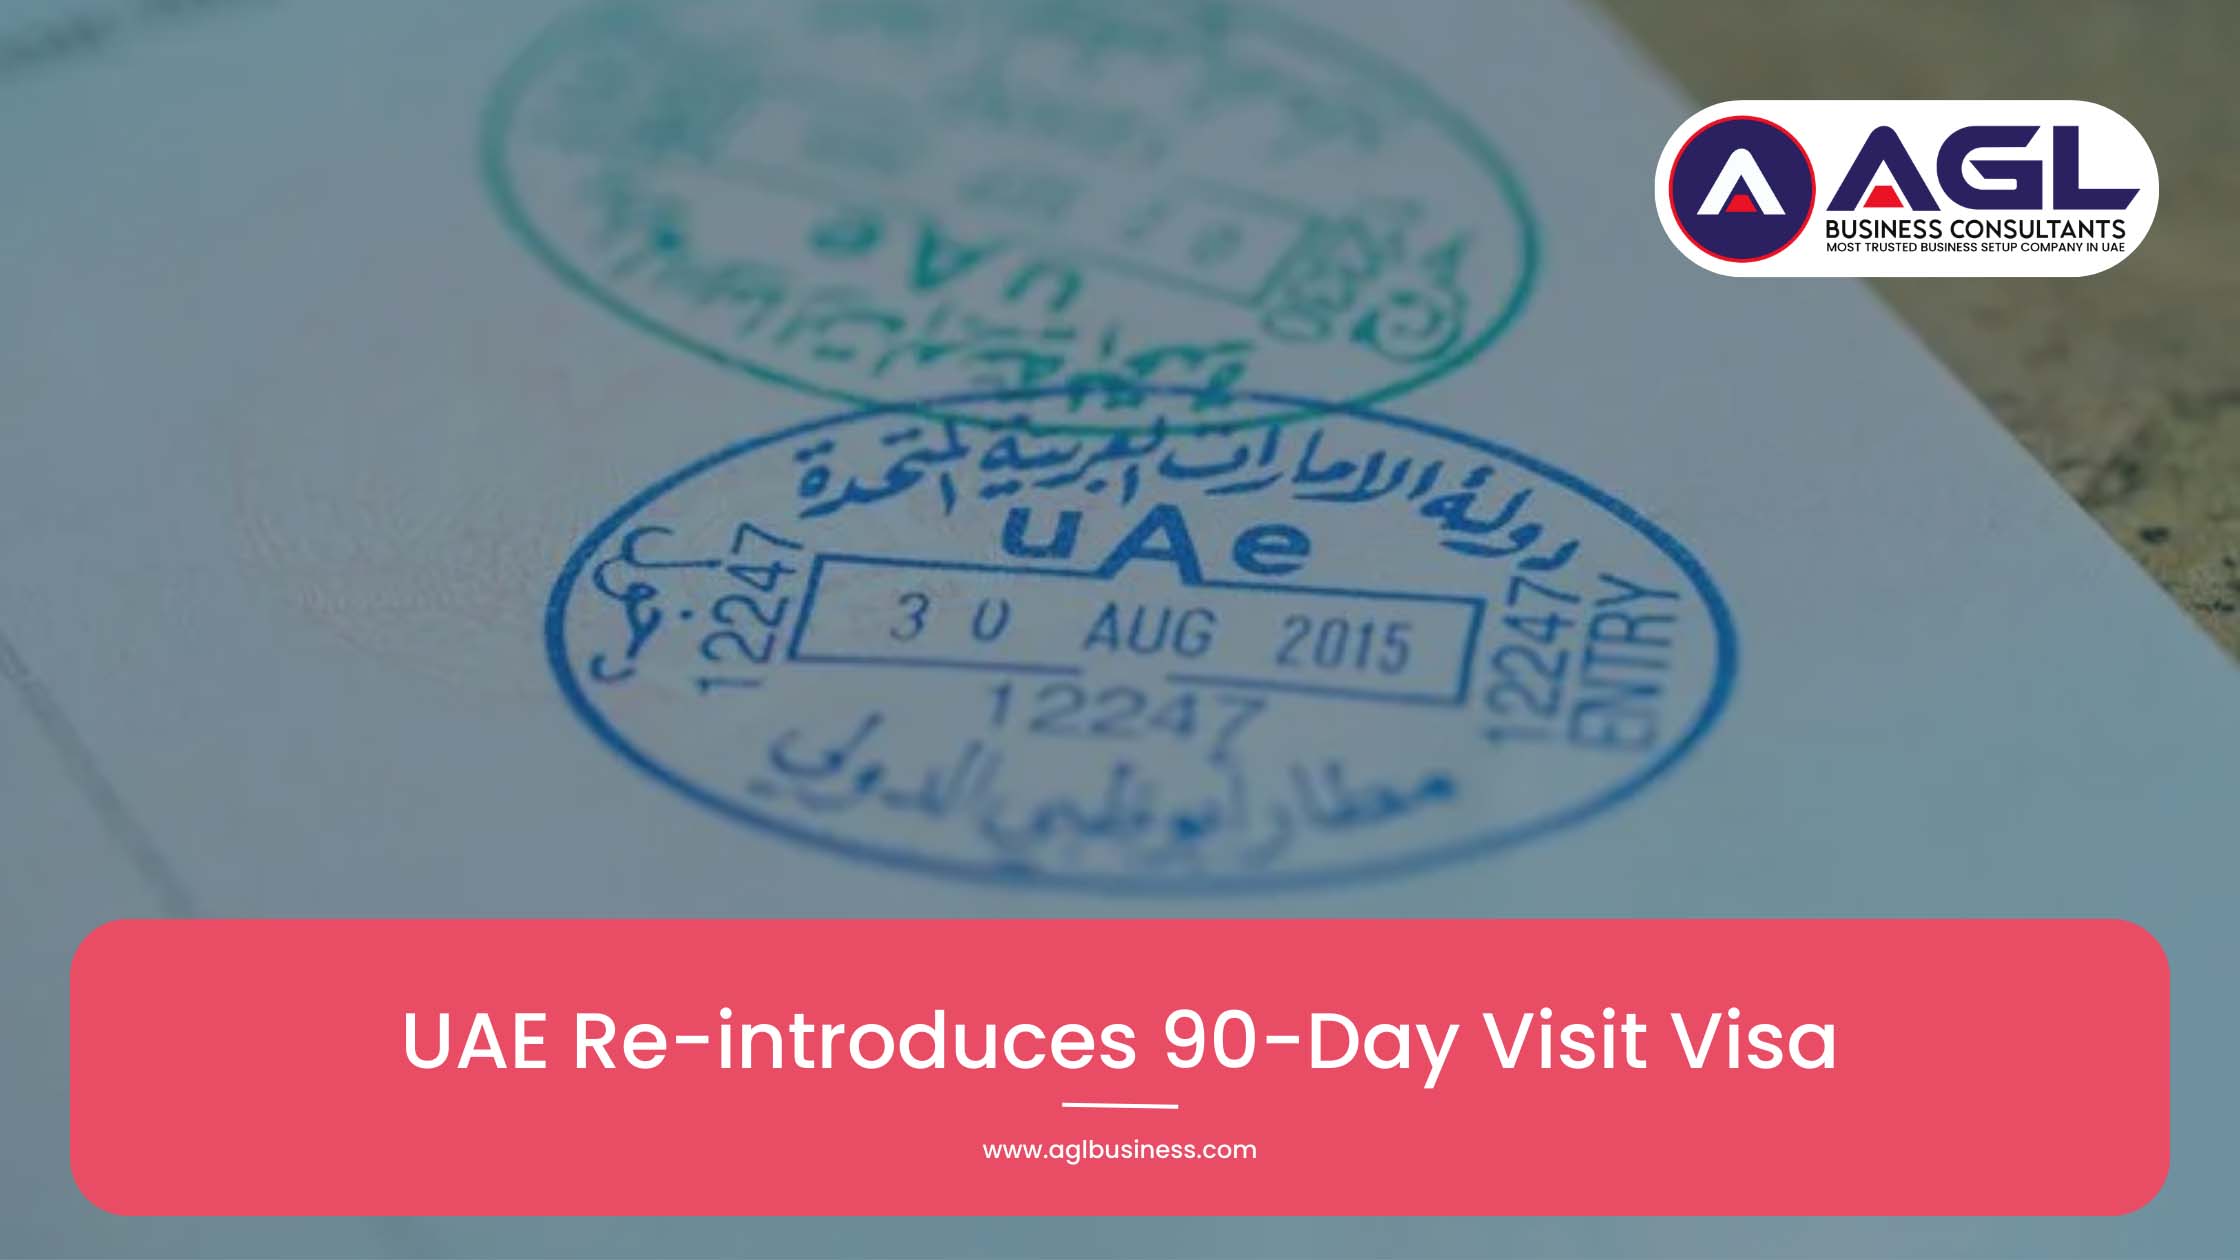 ОАЭ вновь вводят 90-дневную гостевую визу